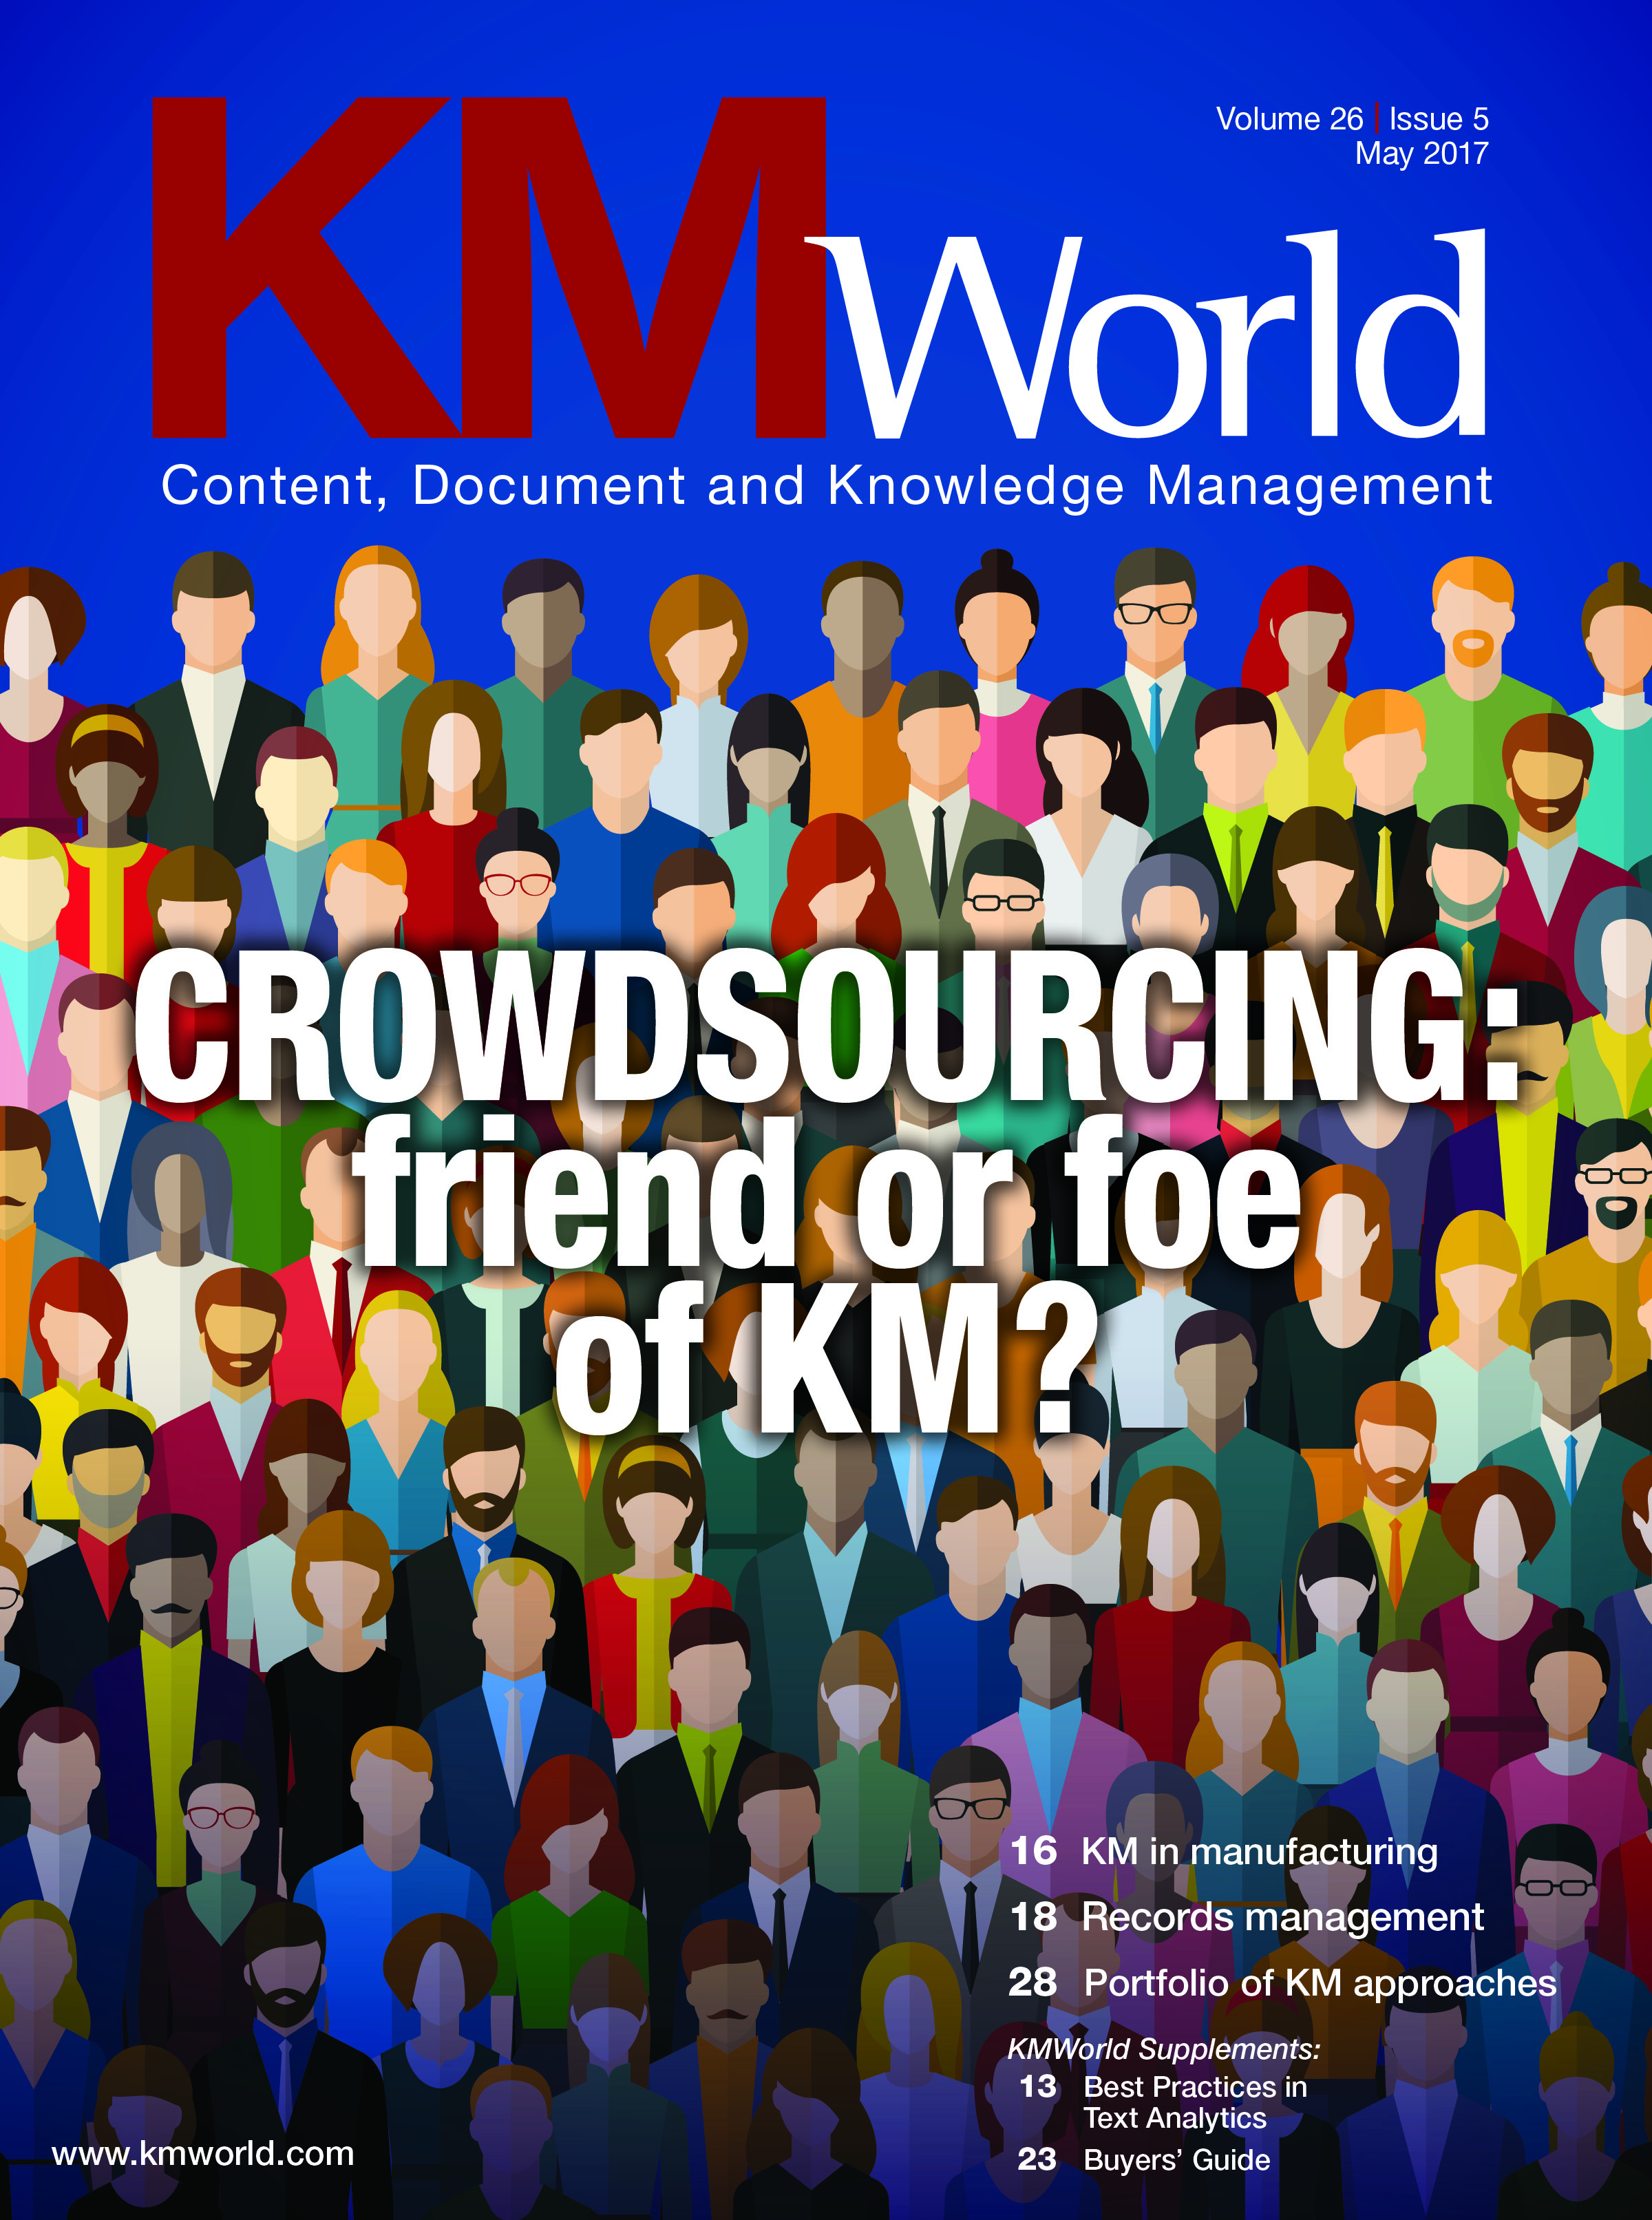 KMWorld Cover